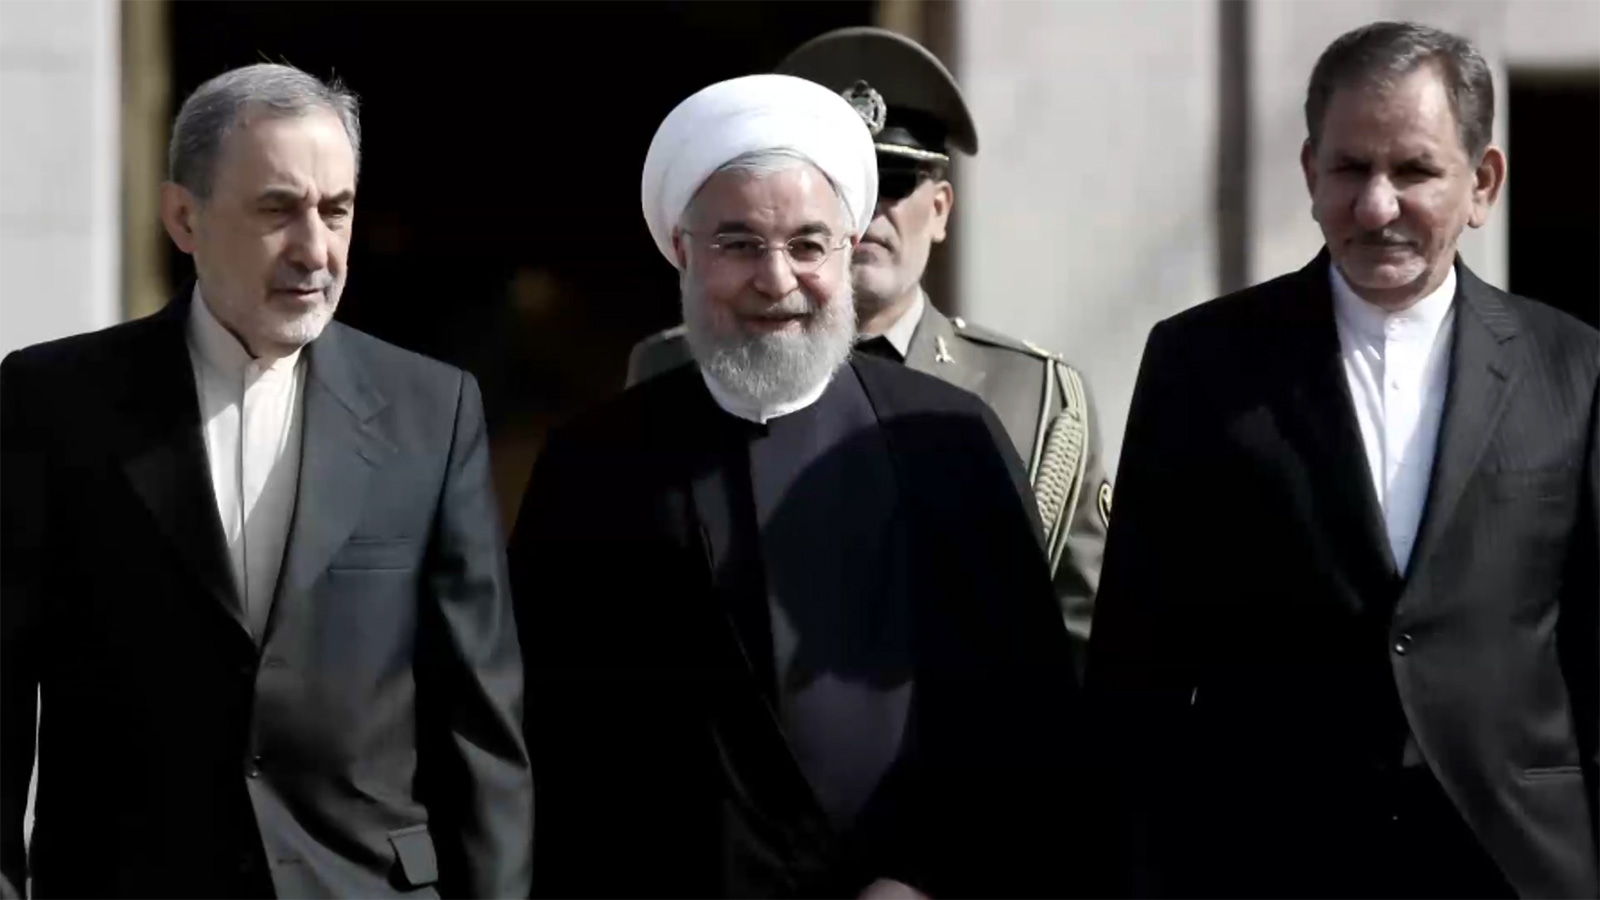 هناك قناعة راسخة في أذهان صنَّاع القرار بإيران بأن حضور إيران في عدد من الملفات الإقليمية وما يرافق ذلك من أعباء اقتصادية هو ضرورة لابدَّ منها لضمان أمنها القومي